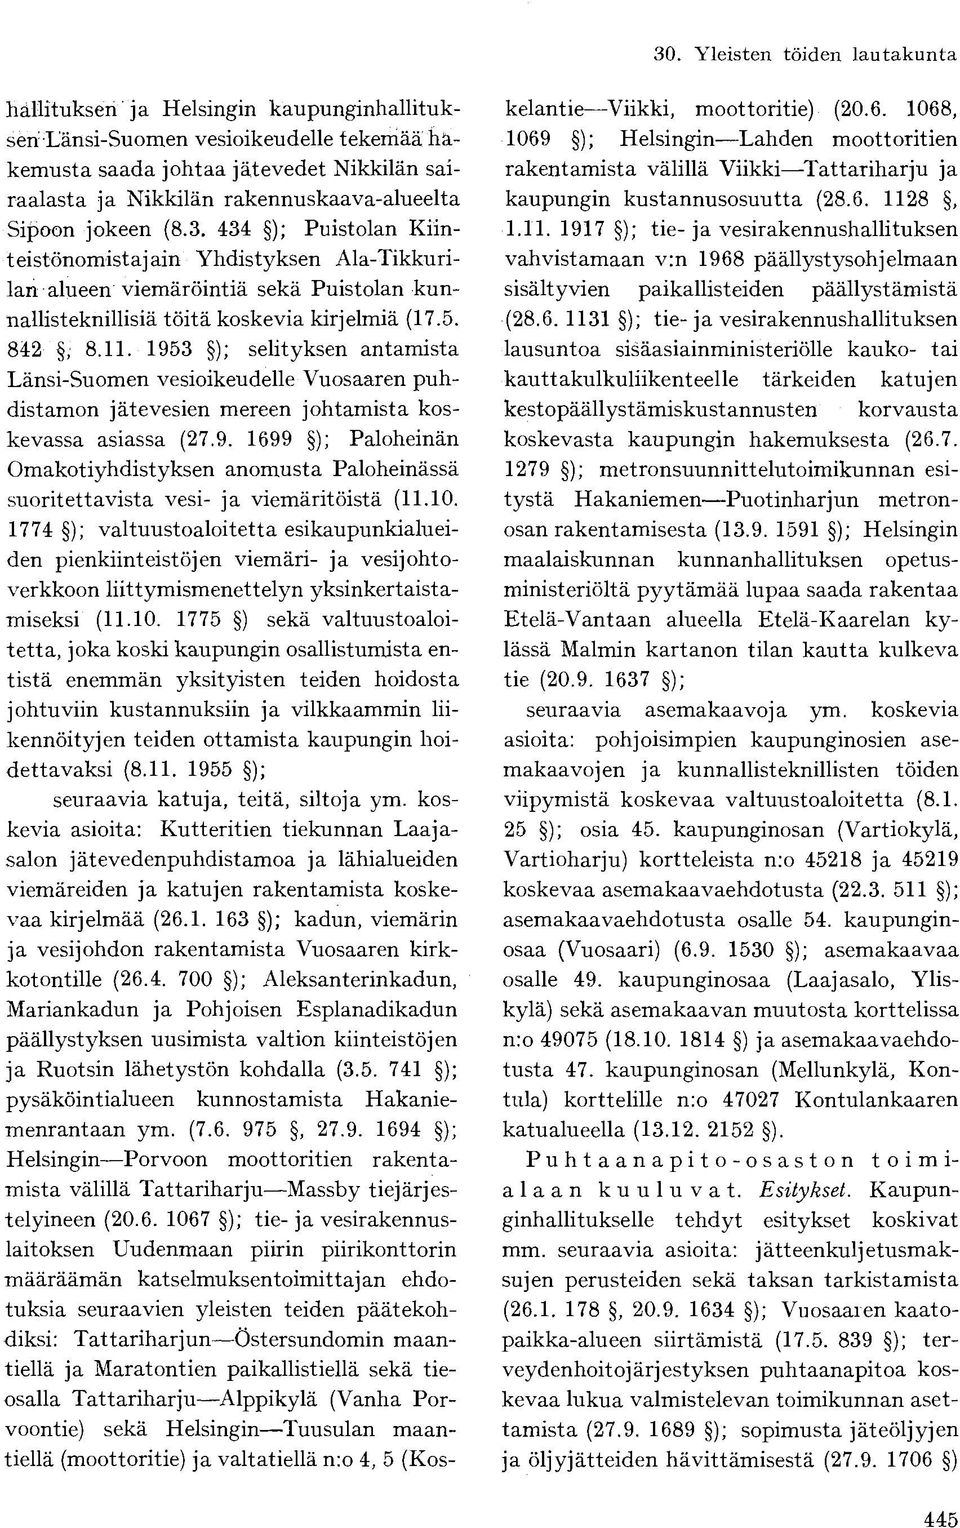 1953 ); selityksen antamista Länsi-Suomen vesioikeudelle Vuosaaren puhdistamon jätevesien mereen johtamista koskevassa asiassa (27.9. 1699 ); Paloheinän Omakotiyhdistyksen anomusta Paloheinässä suoritettavista vesi- ja viemäritöistä (11.